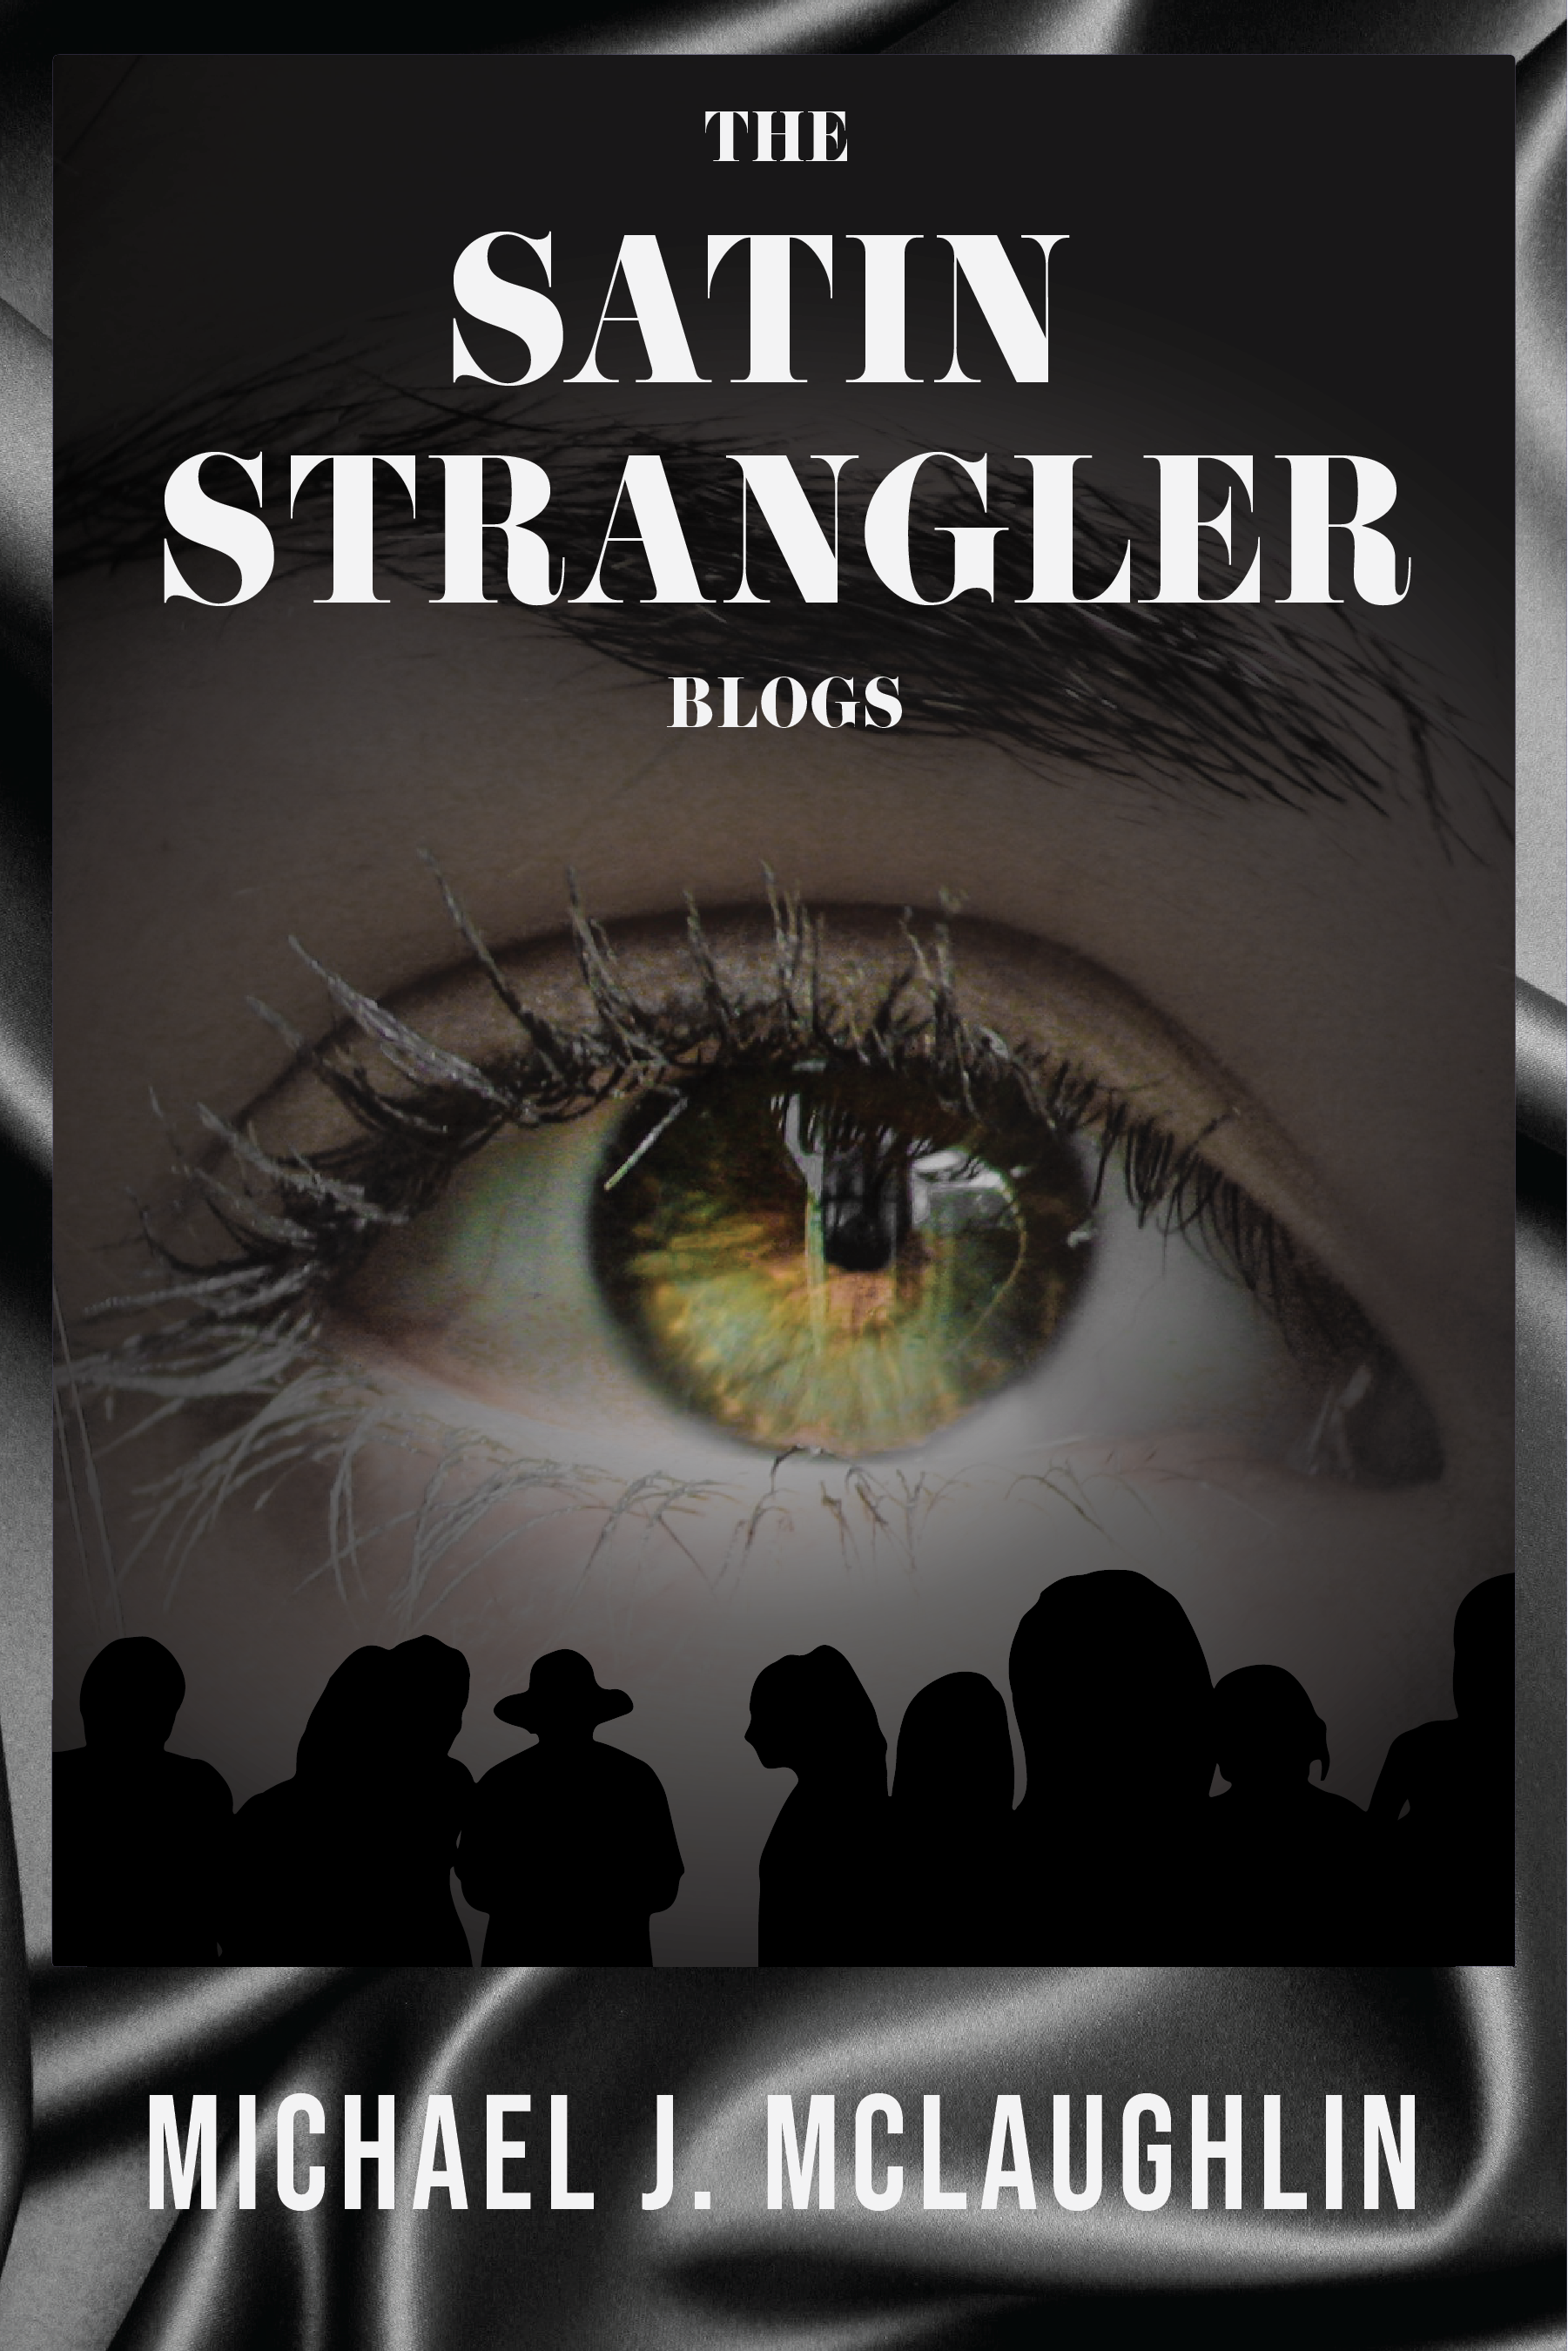 New Look for The Satin Strangler Blogs